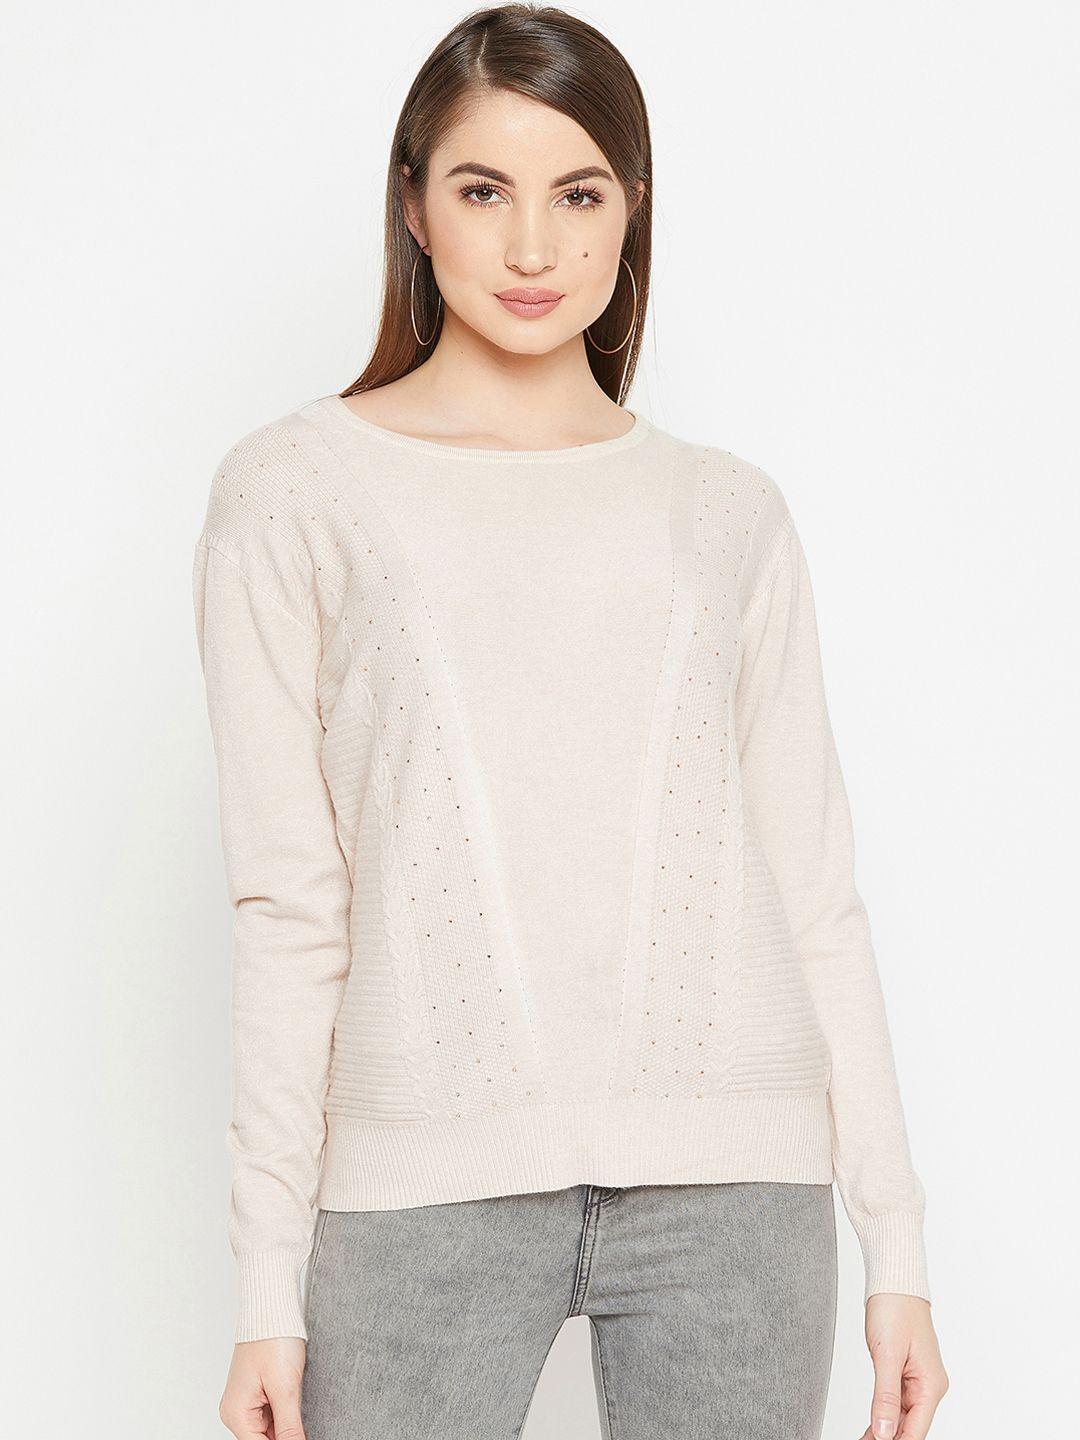 carlton london women beige solid pullover sweater